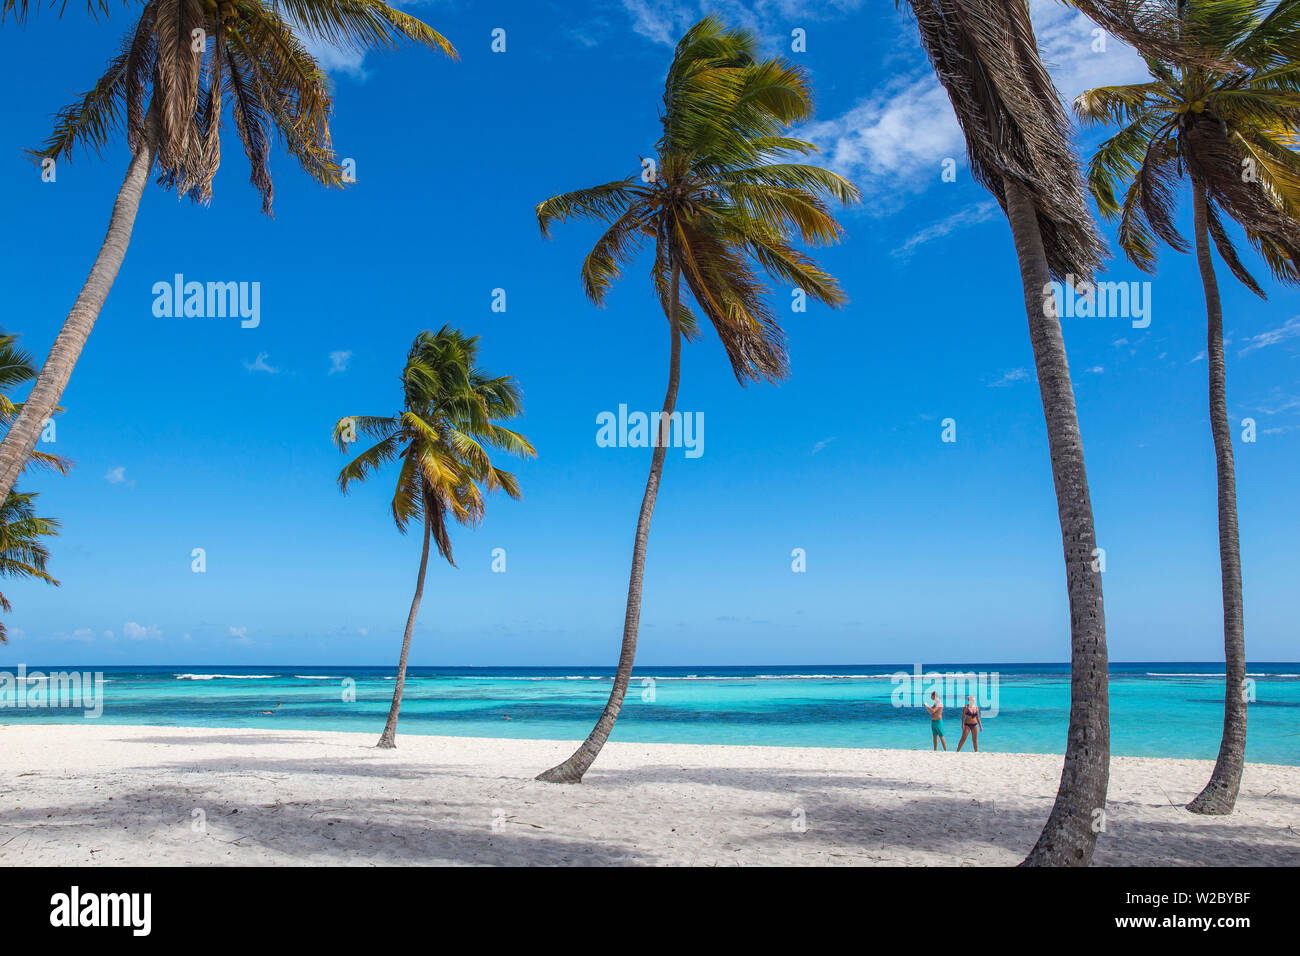 Dominican Republic, Punta Cana, Parque Nacional del Este, Saona Island, Canto de la Playa Stock Photo